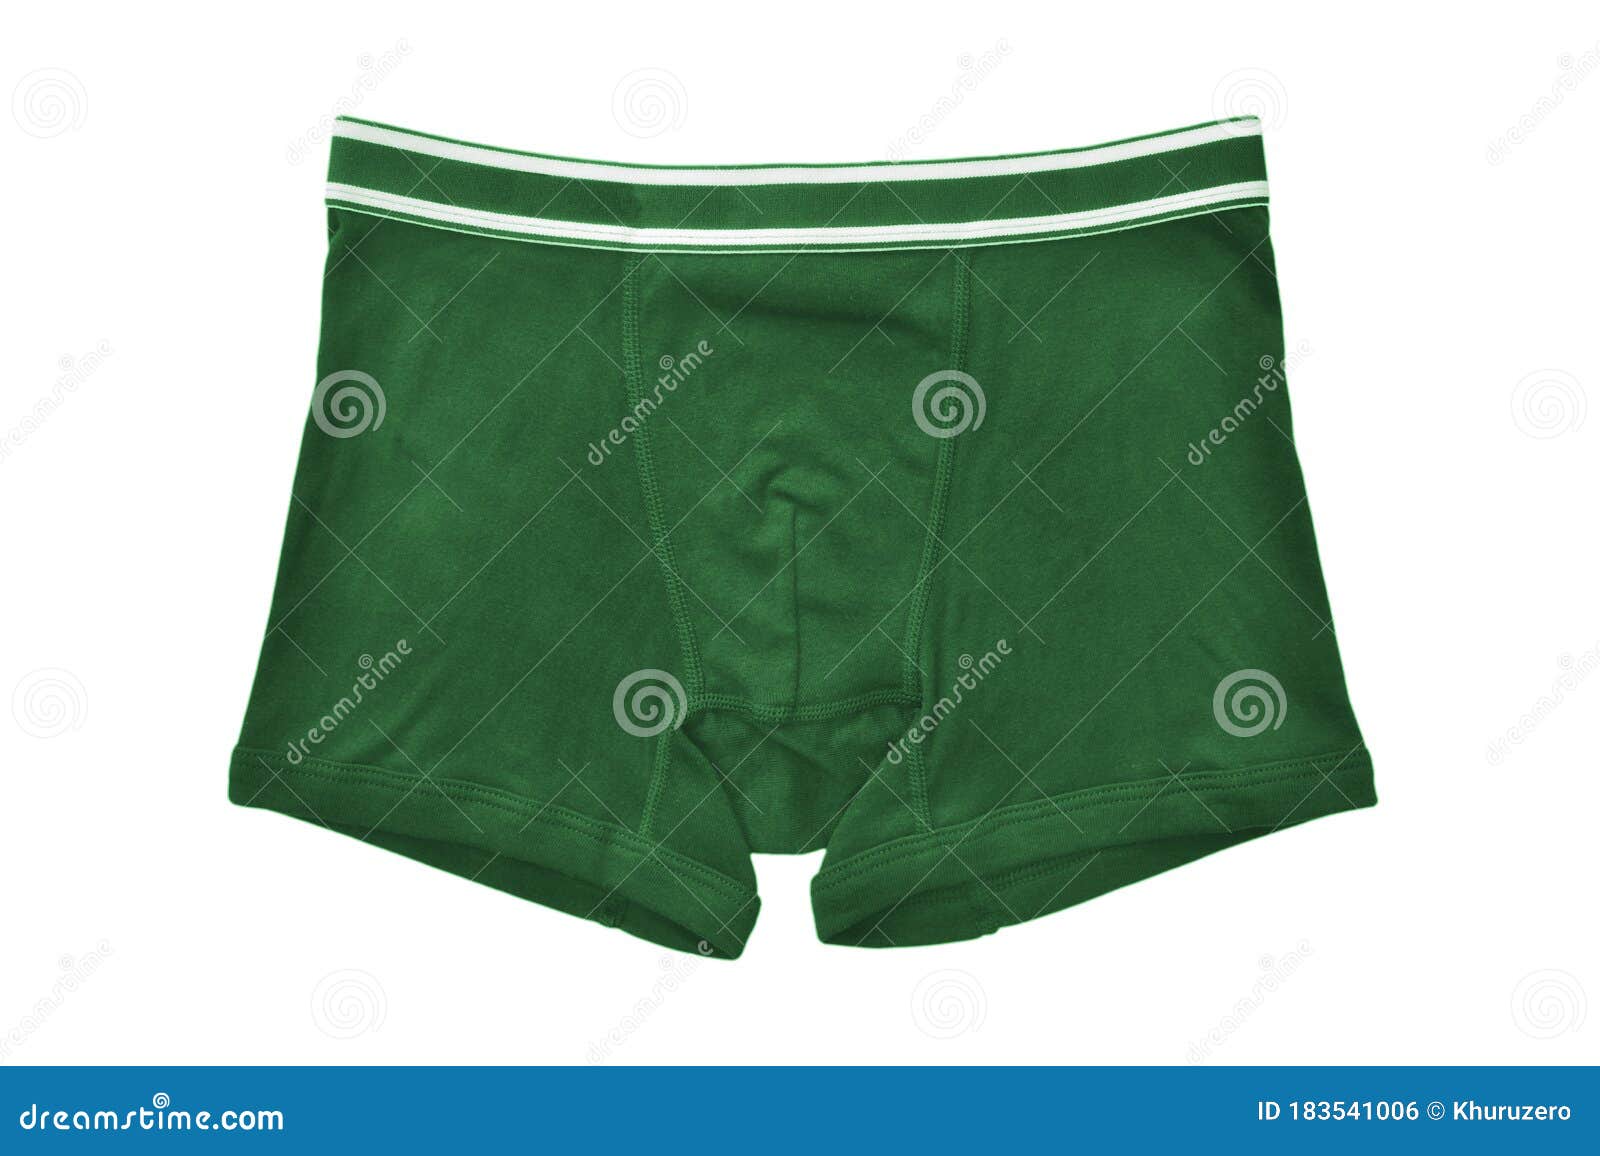 Men Underwear Isolated on White Stock Photo - Image of background ...